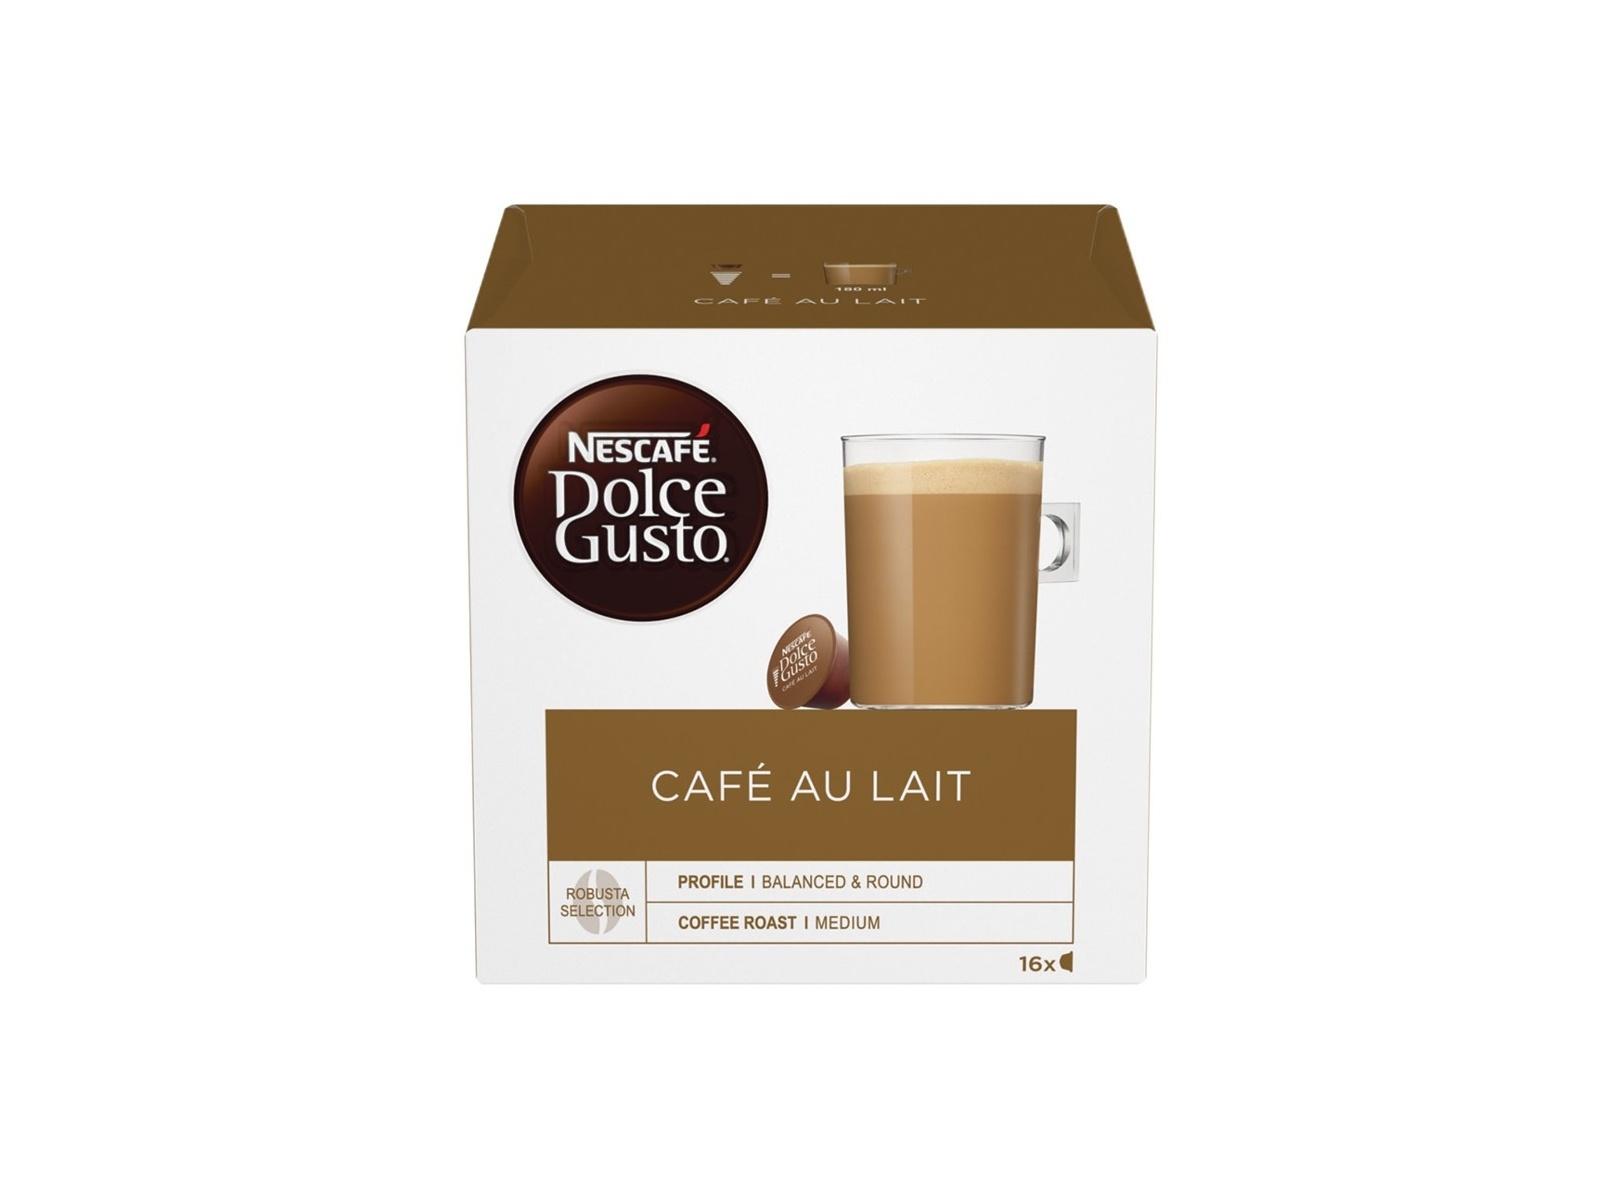 Selected image for Nescafe Dolce Gusto Cafe au Lait Kapsule za kafu, 16 komada, 160g